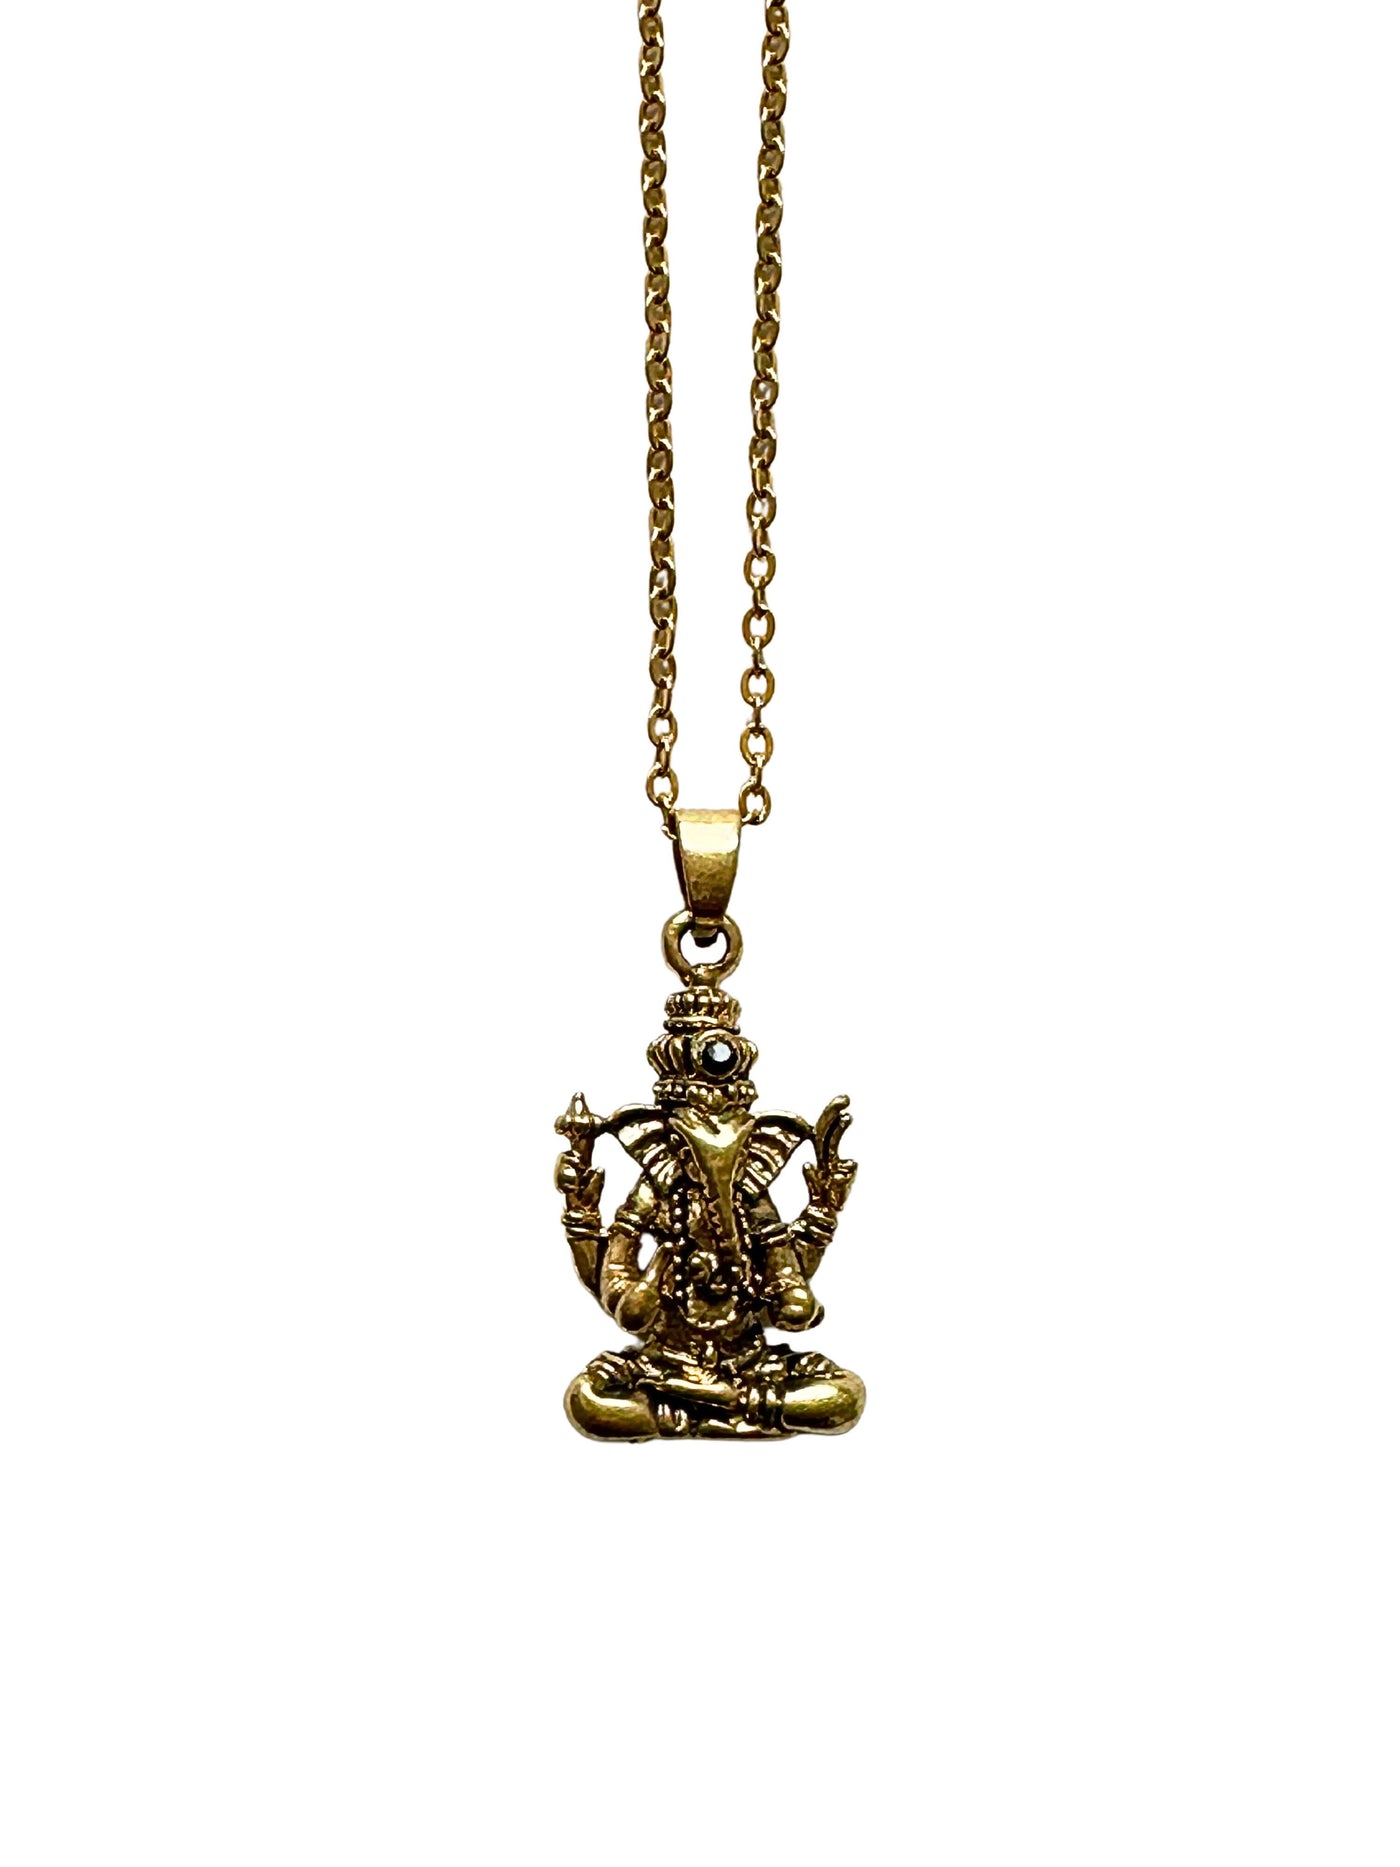 Ganesha Onyx Necklace